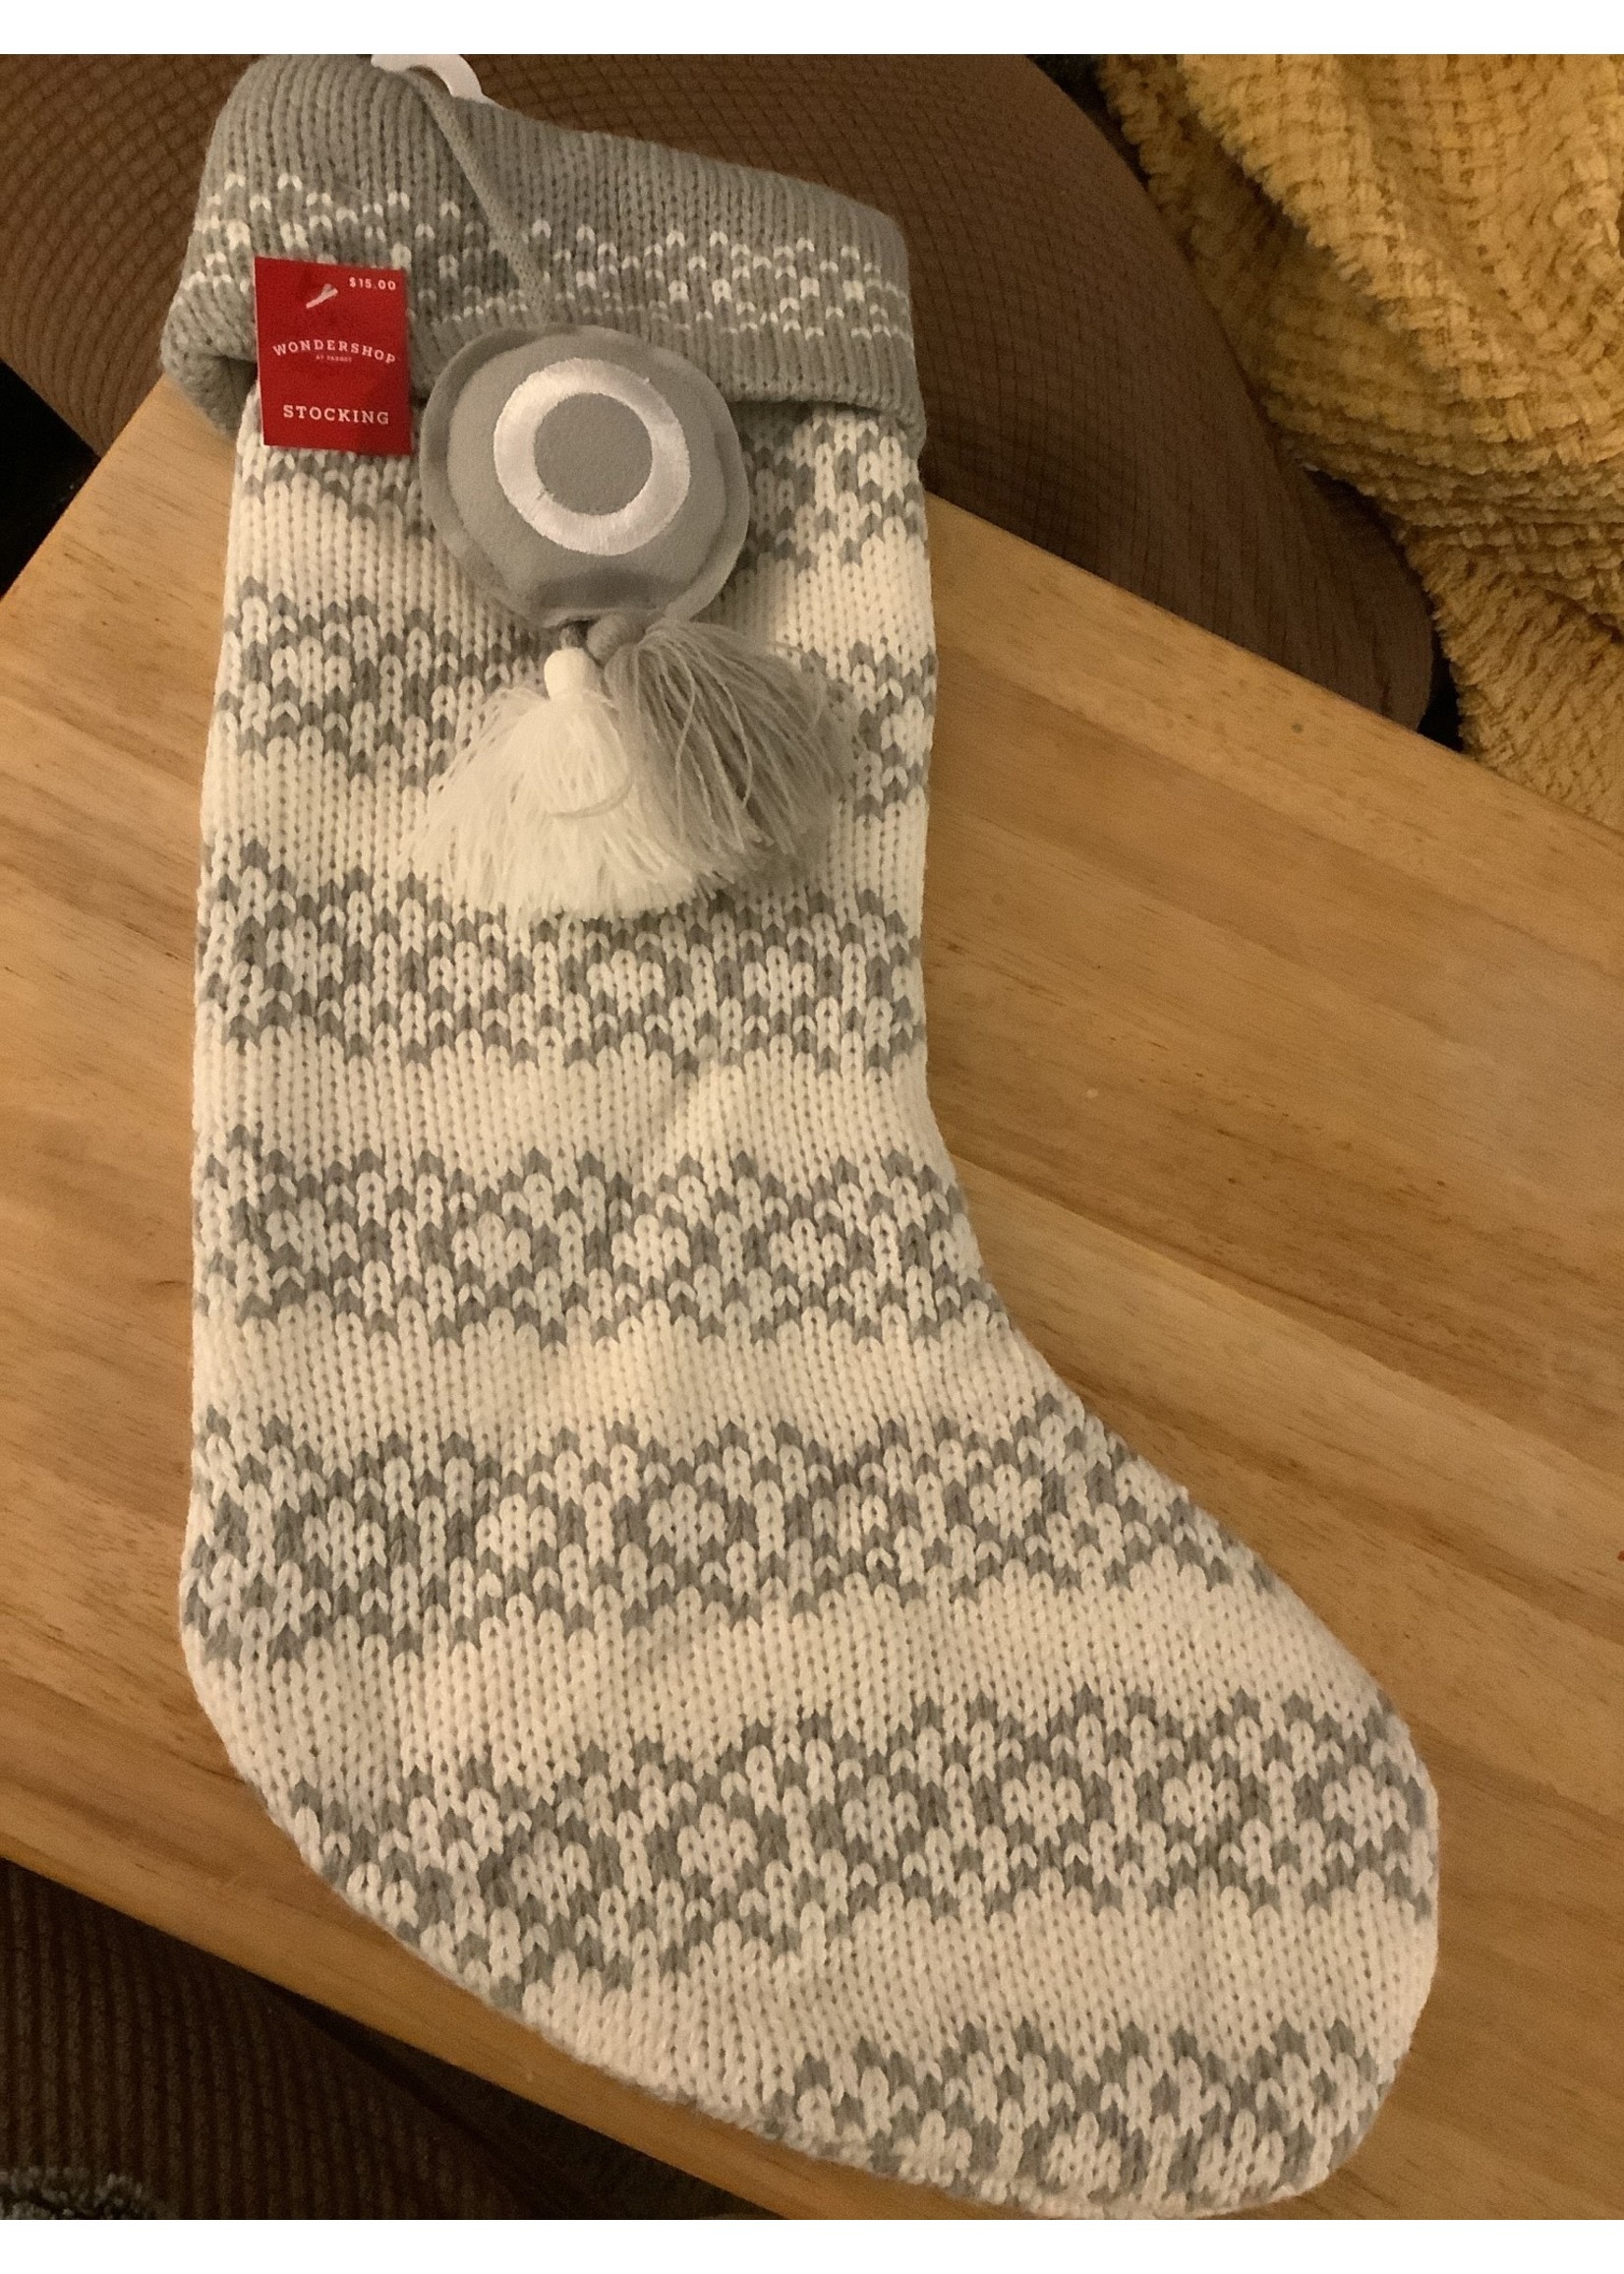 Knit Wondershop Monogrammed “O” Stocking white/grey